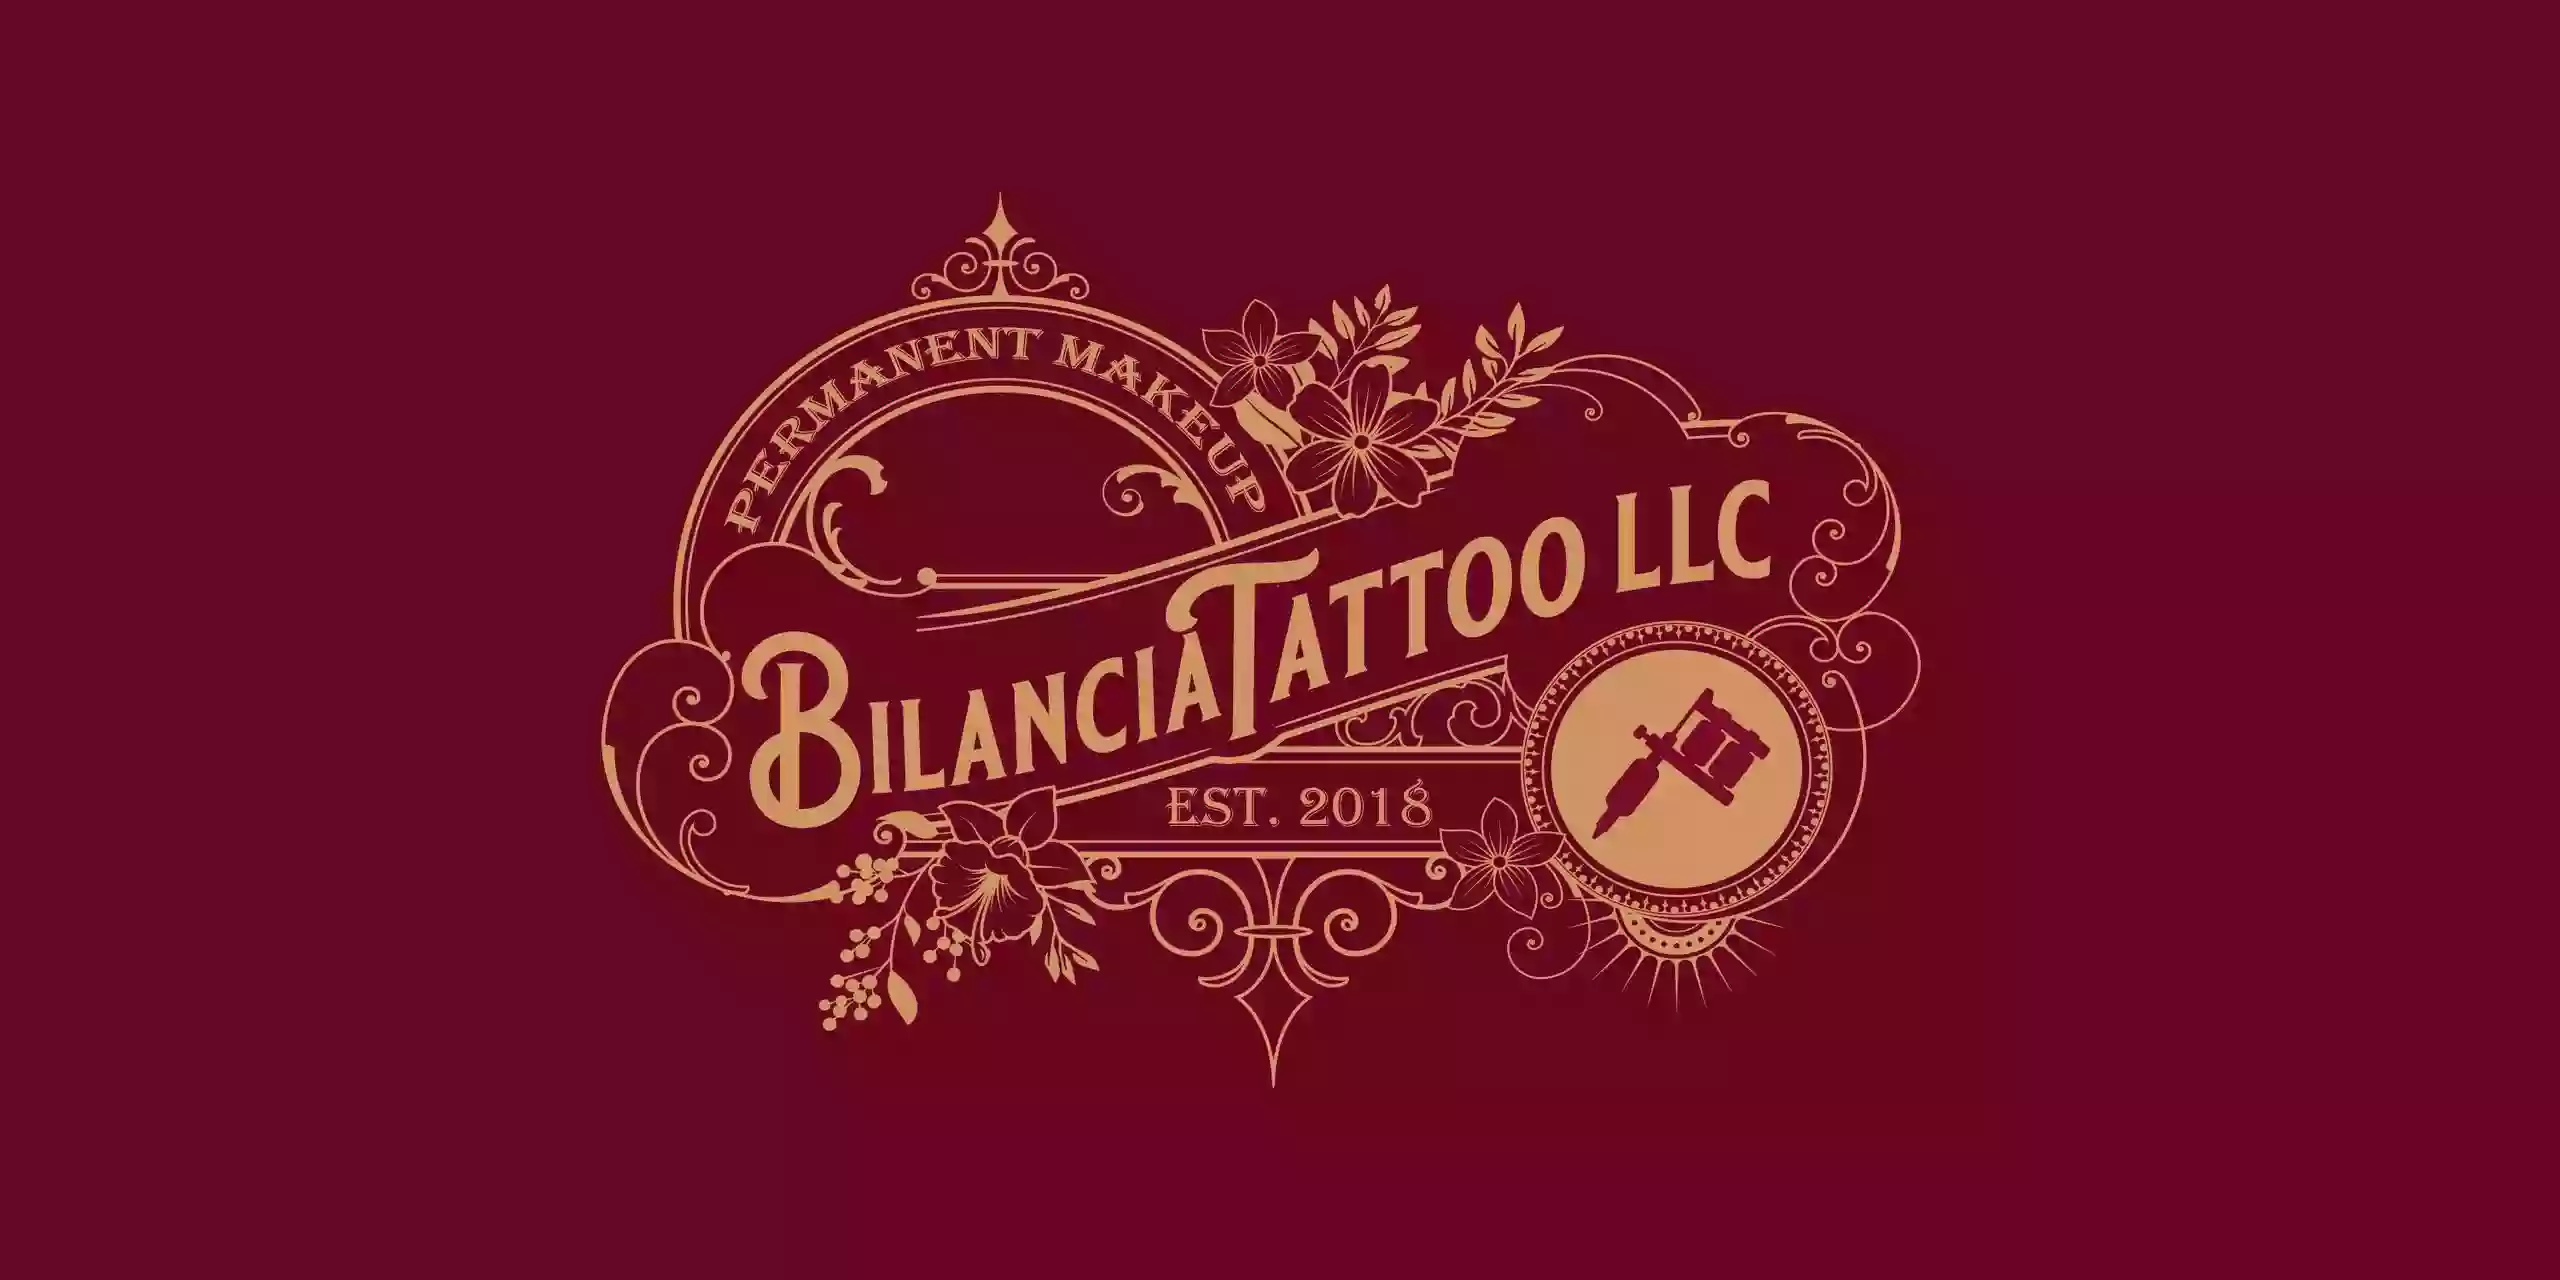 Bilancia Tattoo LLC